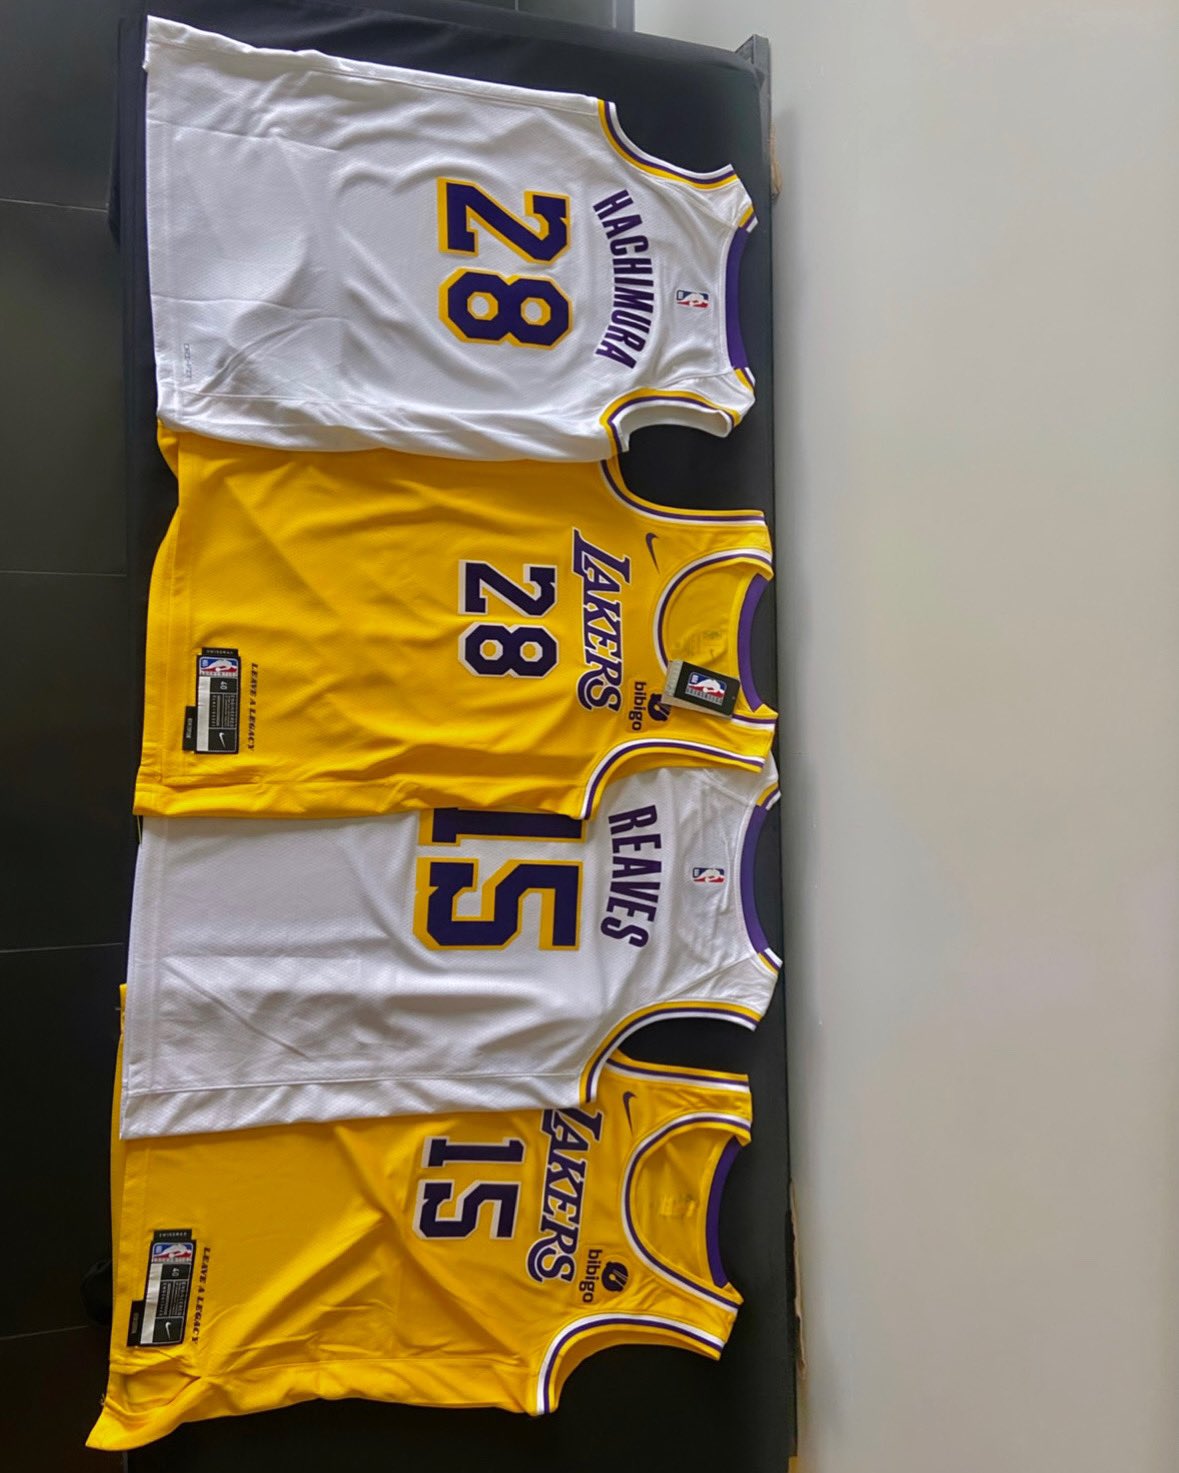 Lakers store 🔥 @lakers #lakers #lakersnation #lakersbasketball #l